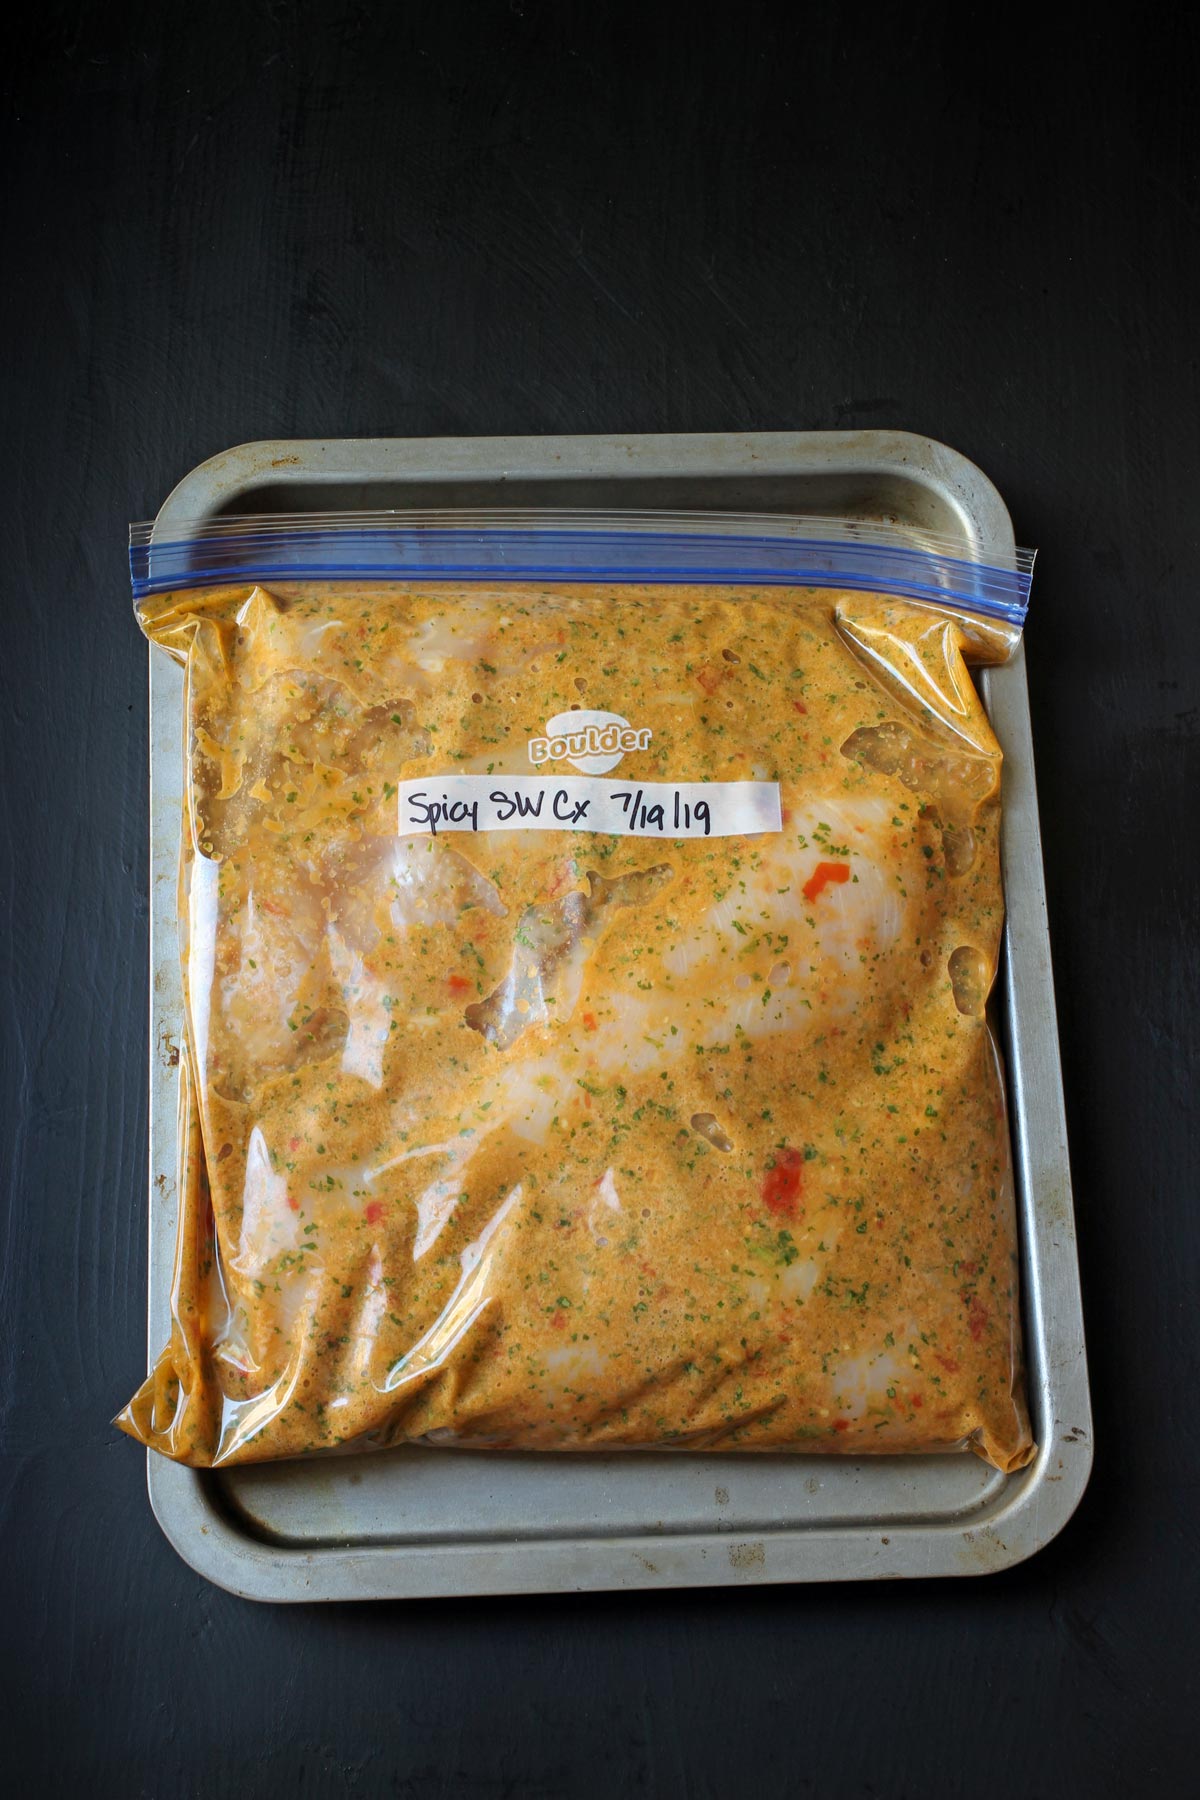 spicy chicken and marinade in ziptop freezer bag.